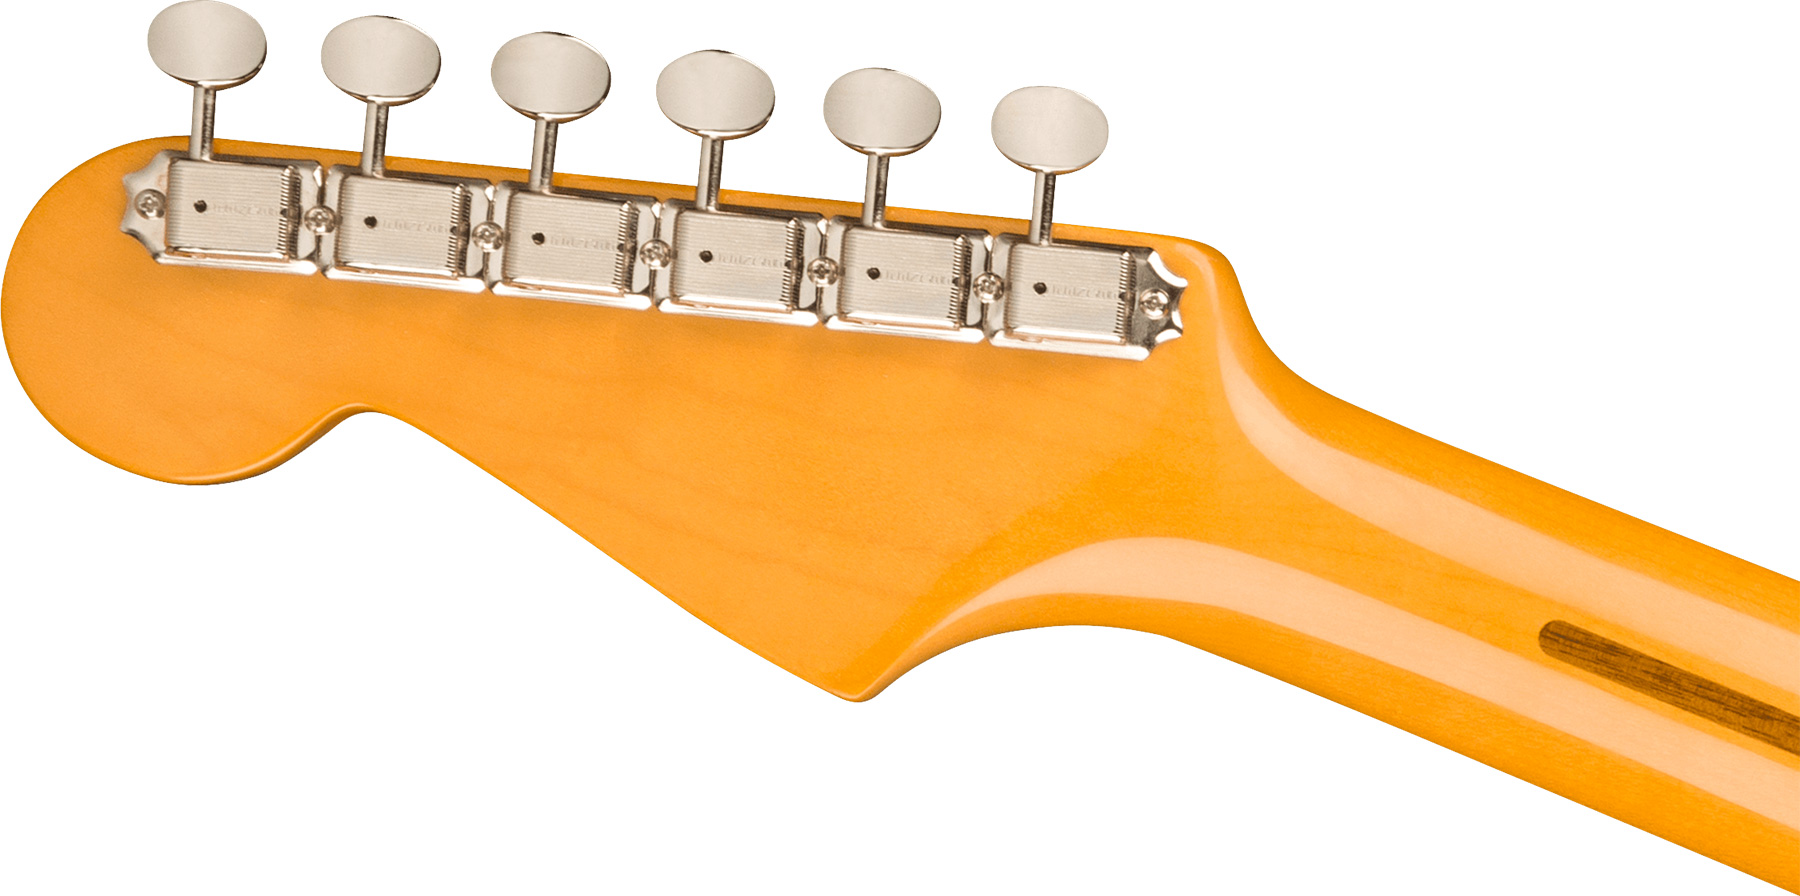 Fender Strat 1957 American Vintage Ii Usa 3s Trem Mn - Vintage Blonde - Guitare Électrique Forme Str - Variation 3